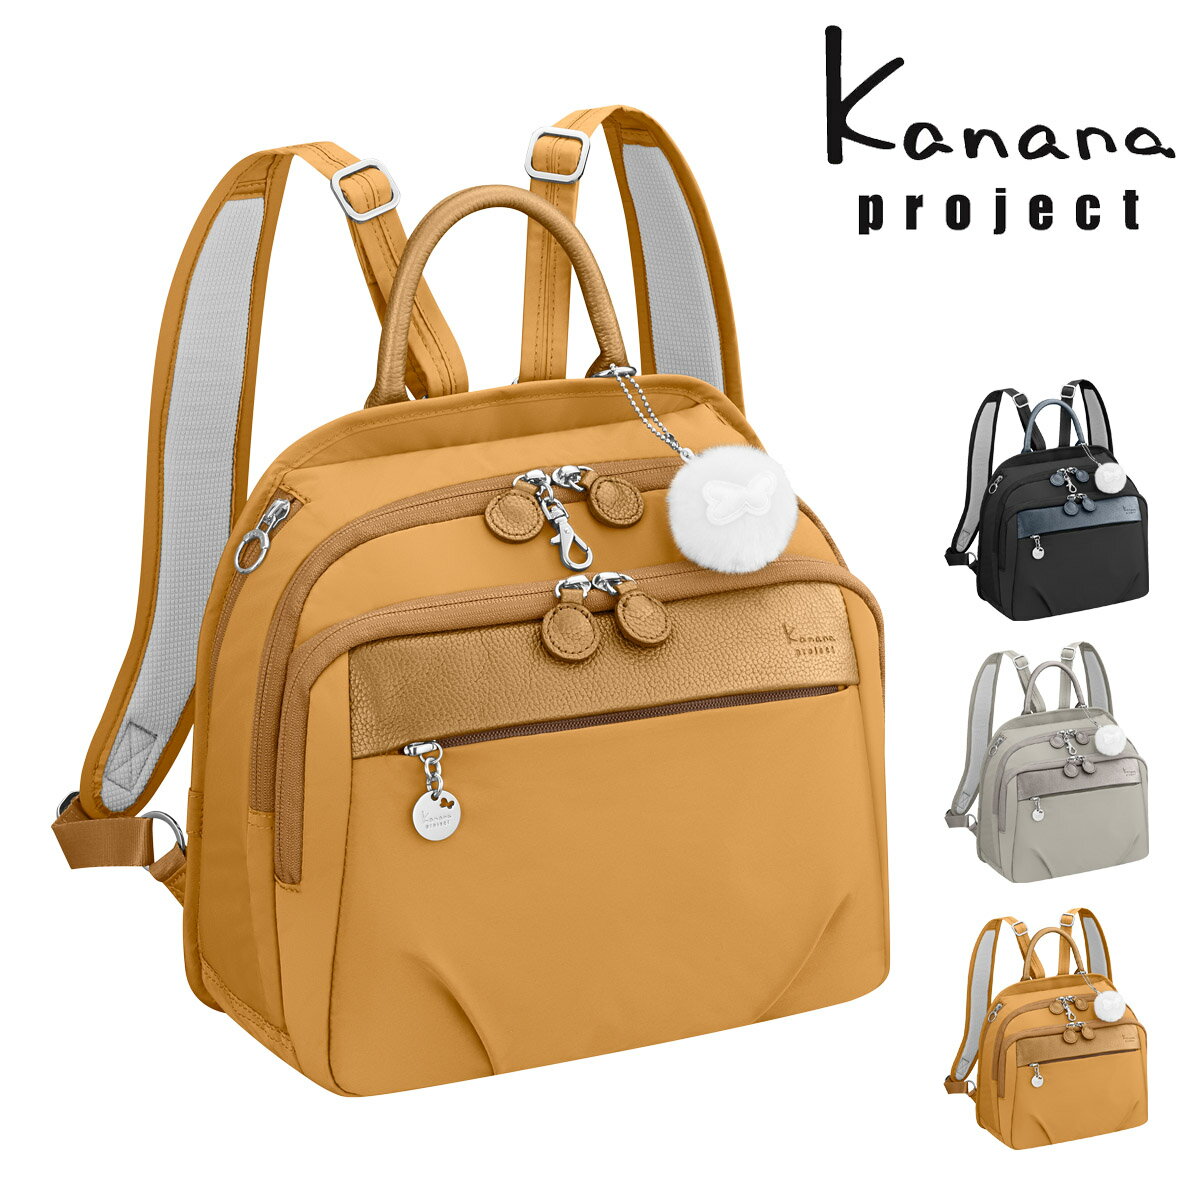 カナナプロジェクト リュック 軽量 レディース 67644 PJ1-4th Kanana project | 抗菌